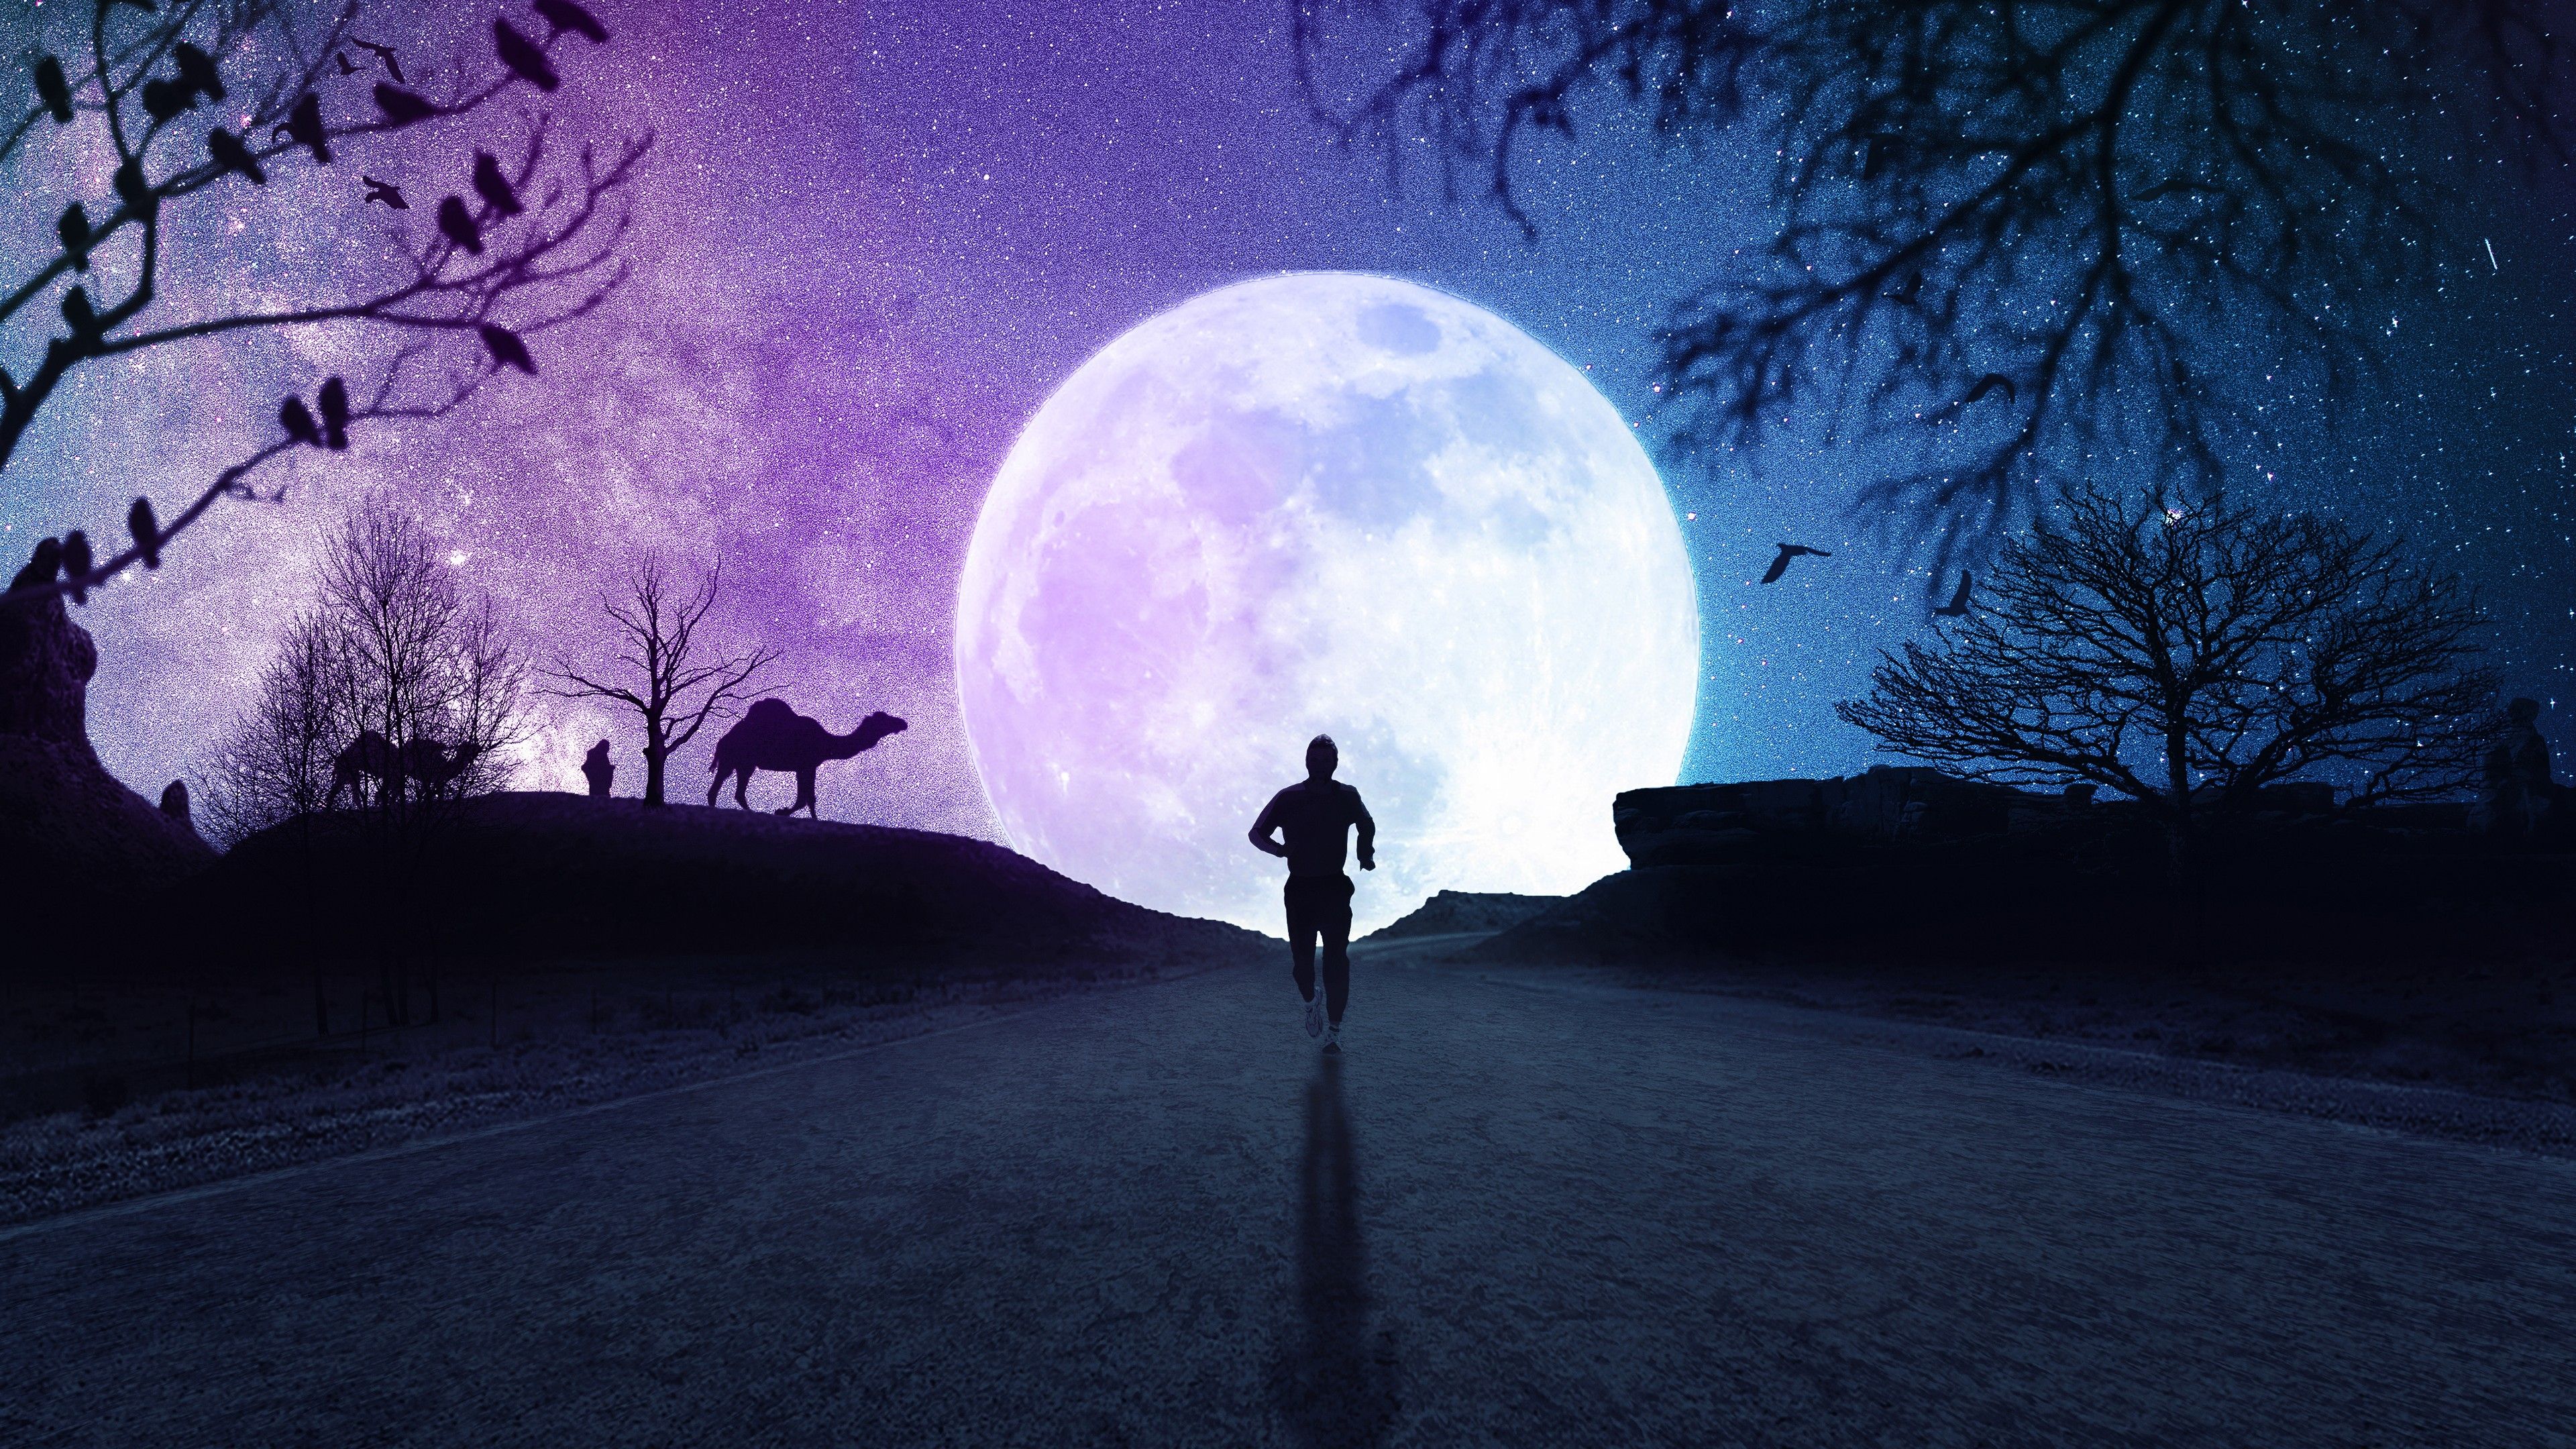 Full moon 4K Wallpaper, Silhouette, Running, Starry sky, Night, Road, Fantasy